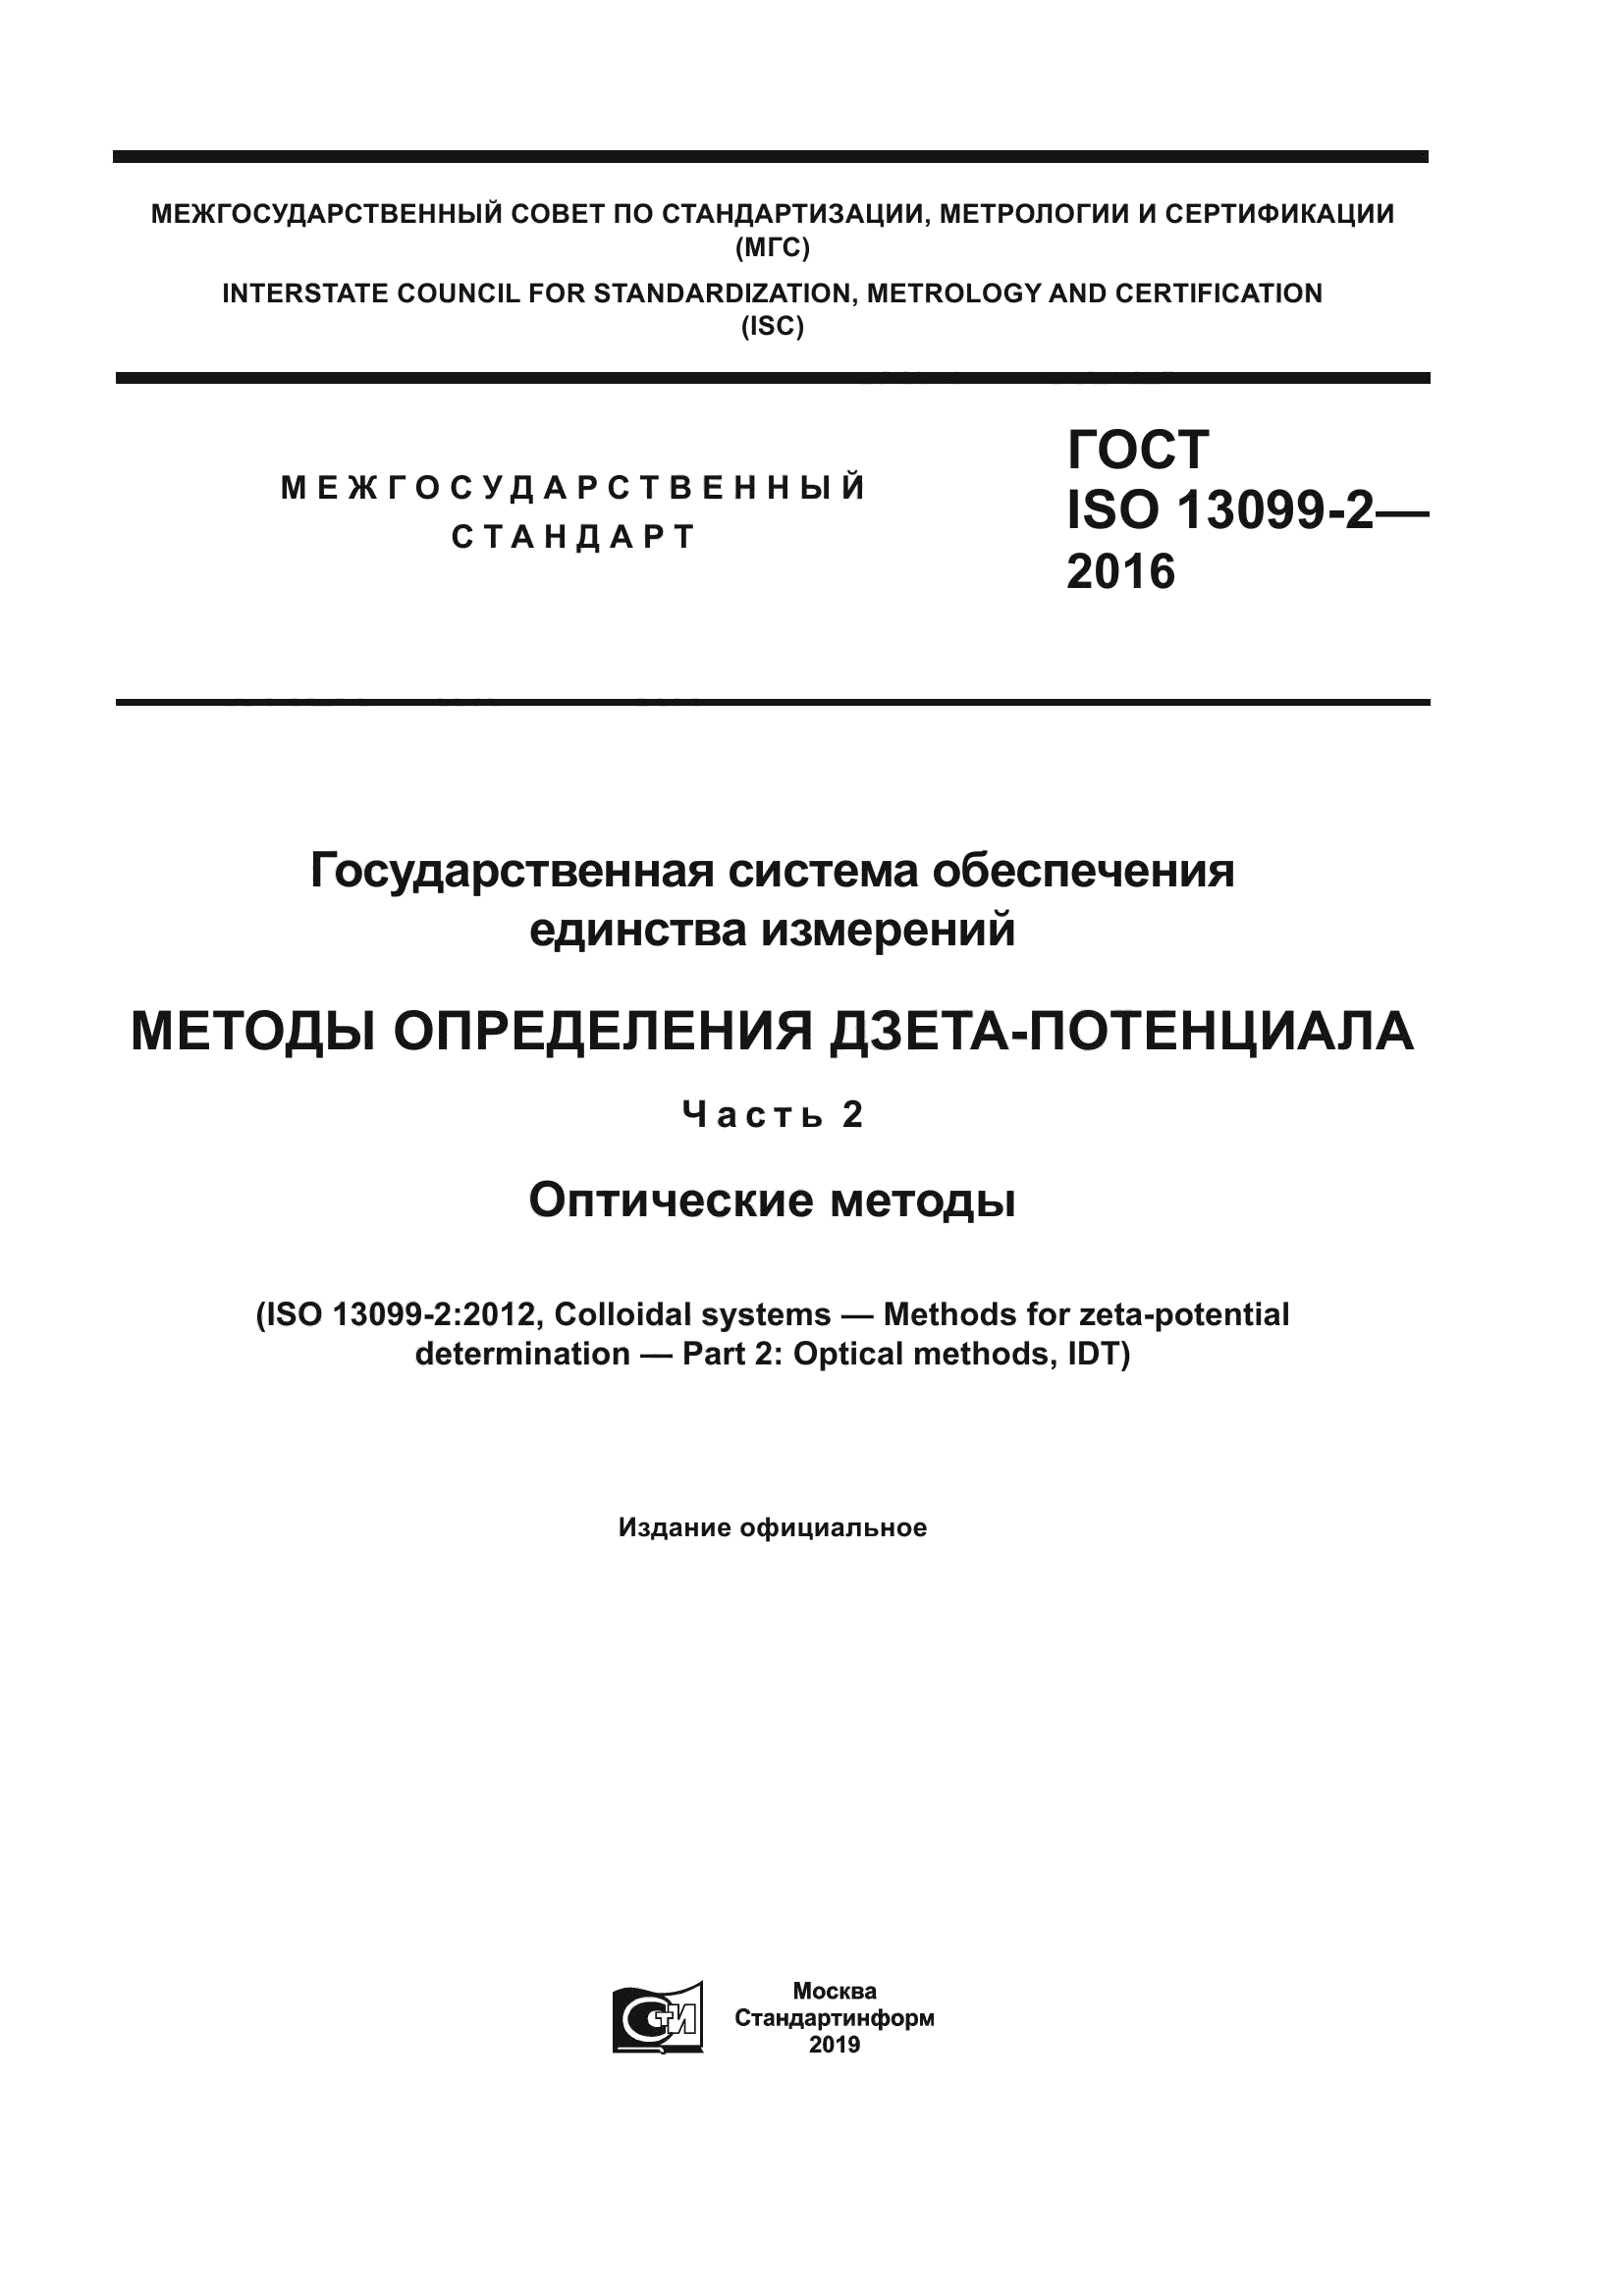 ГОСТ ISO 13099-2-2016